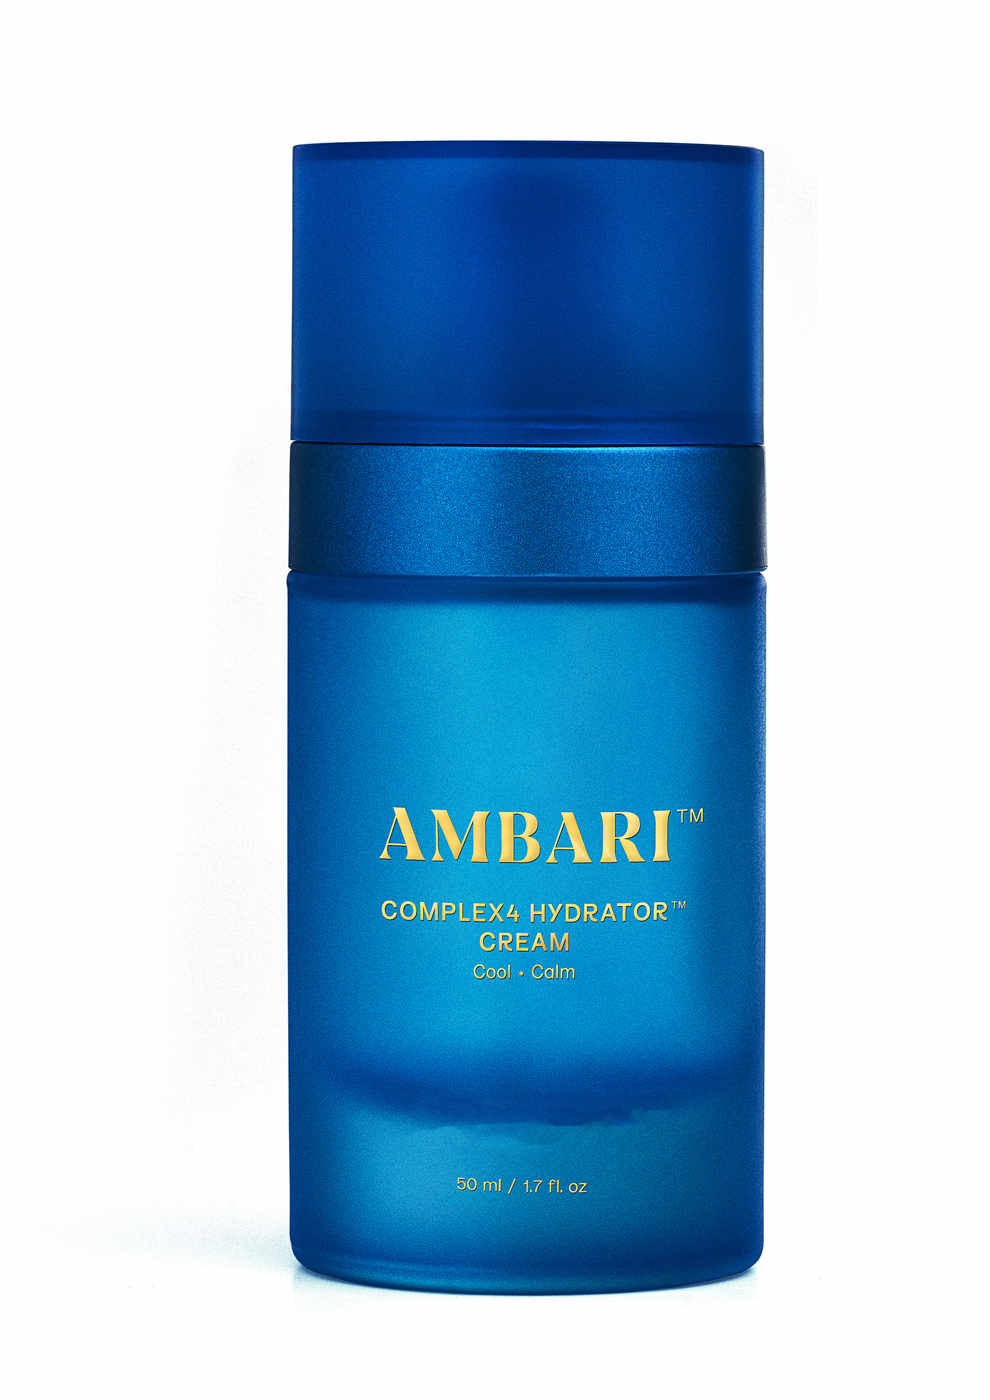 Ambari - Complex4 Hydrator Cream